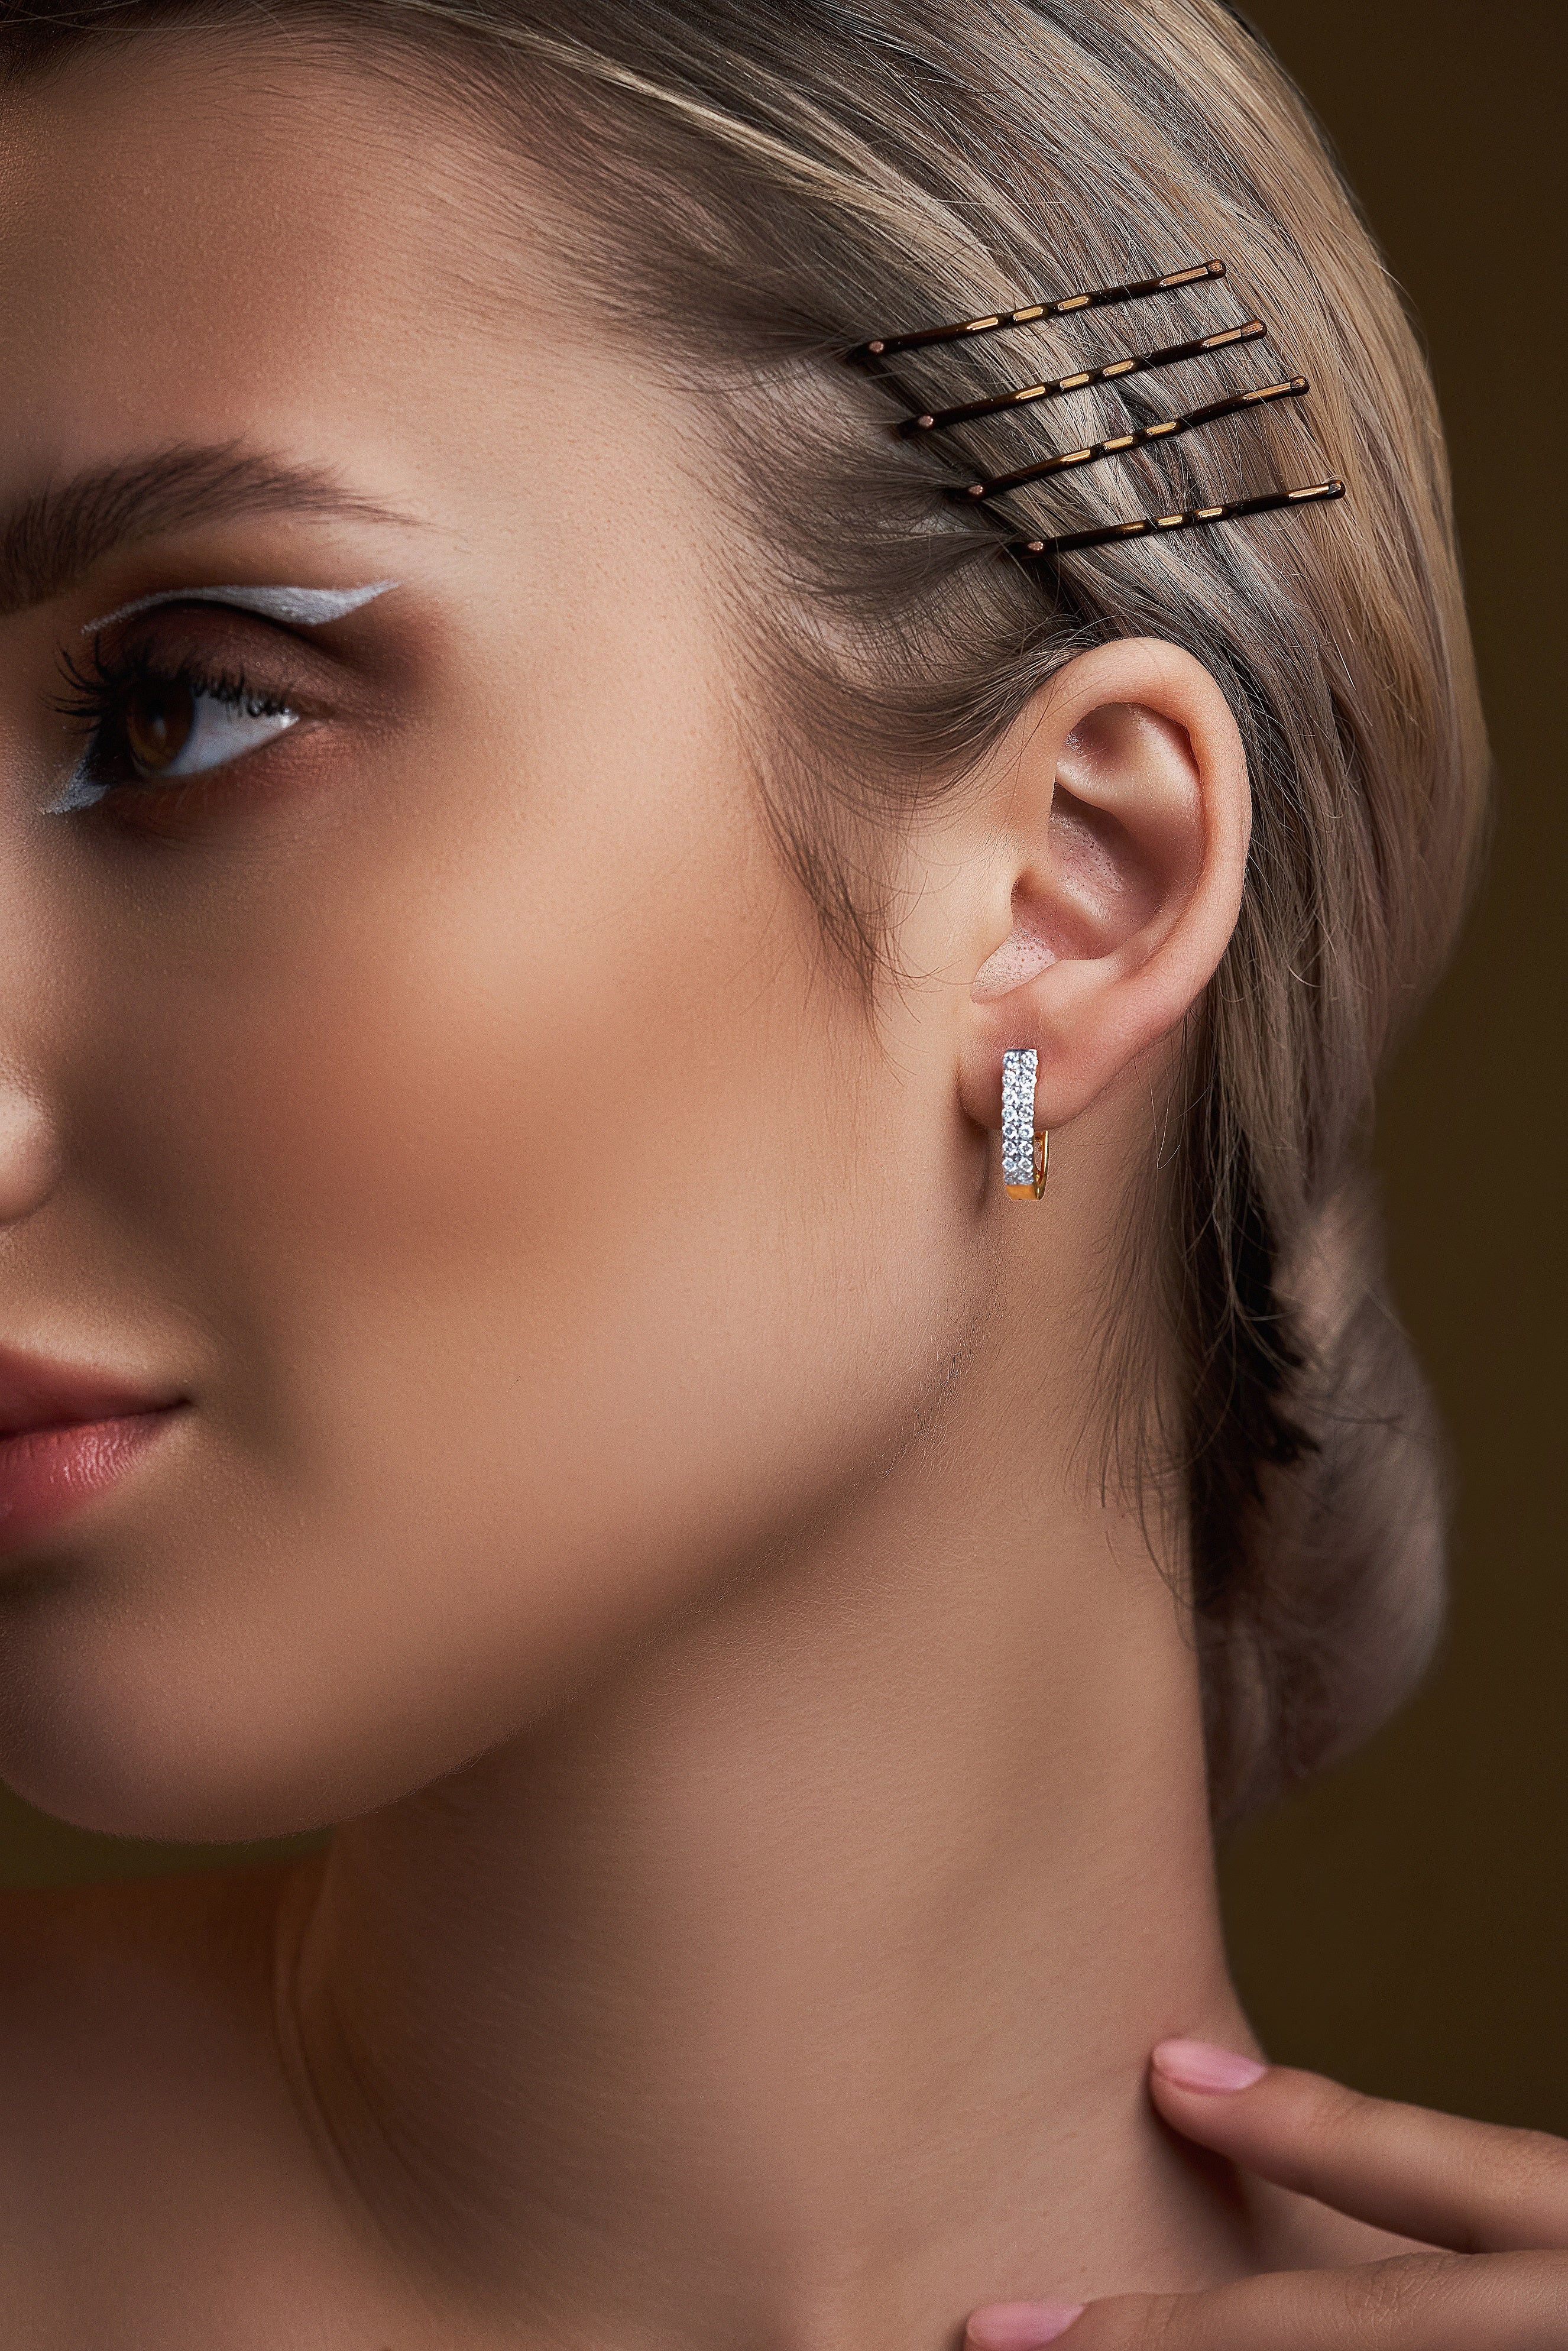 girl with diamond earring